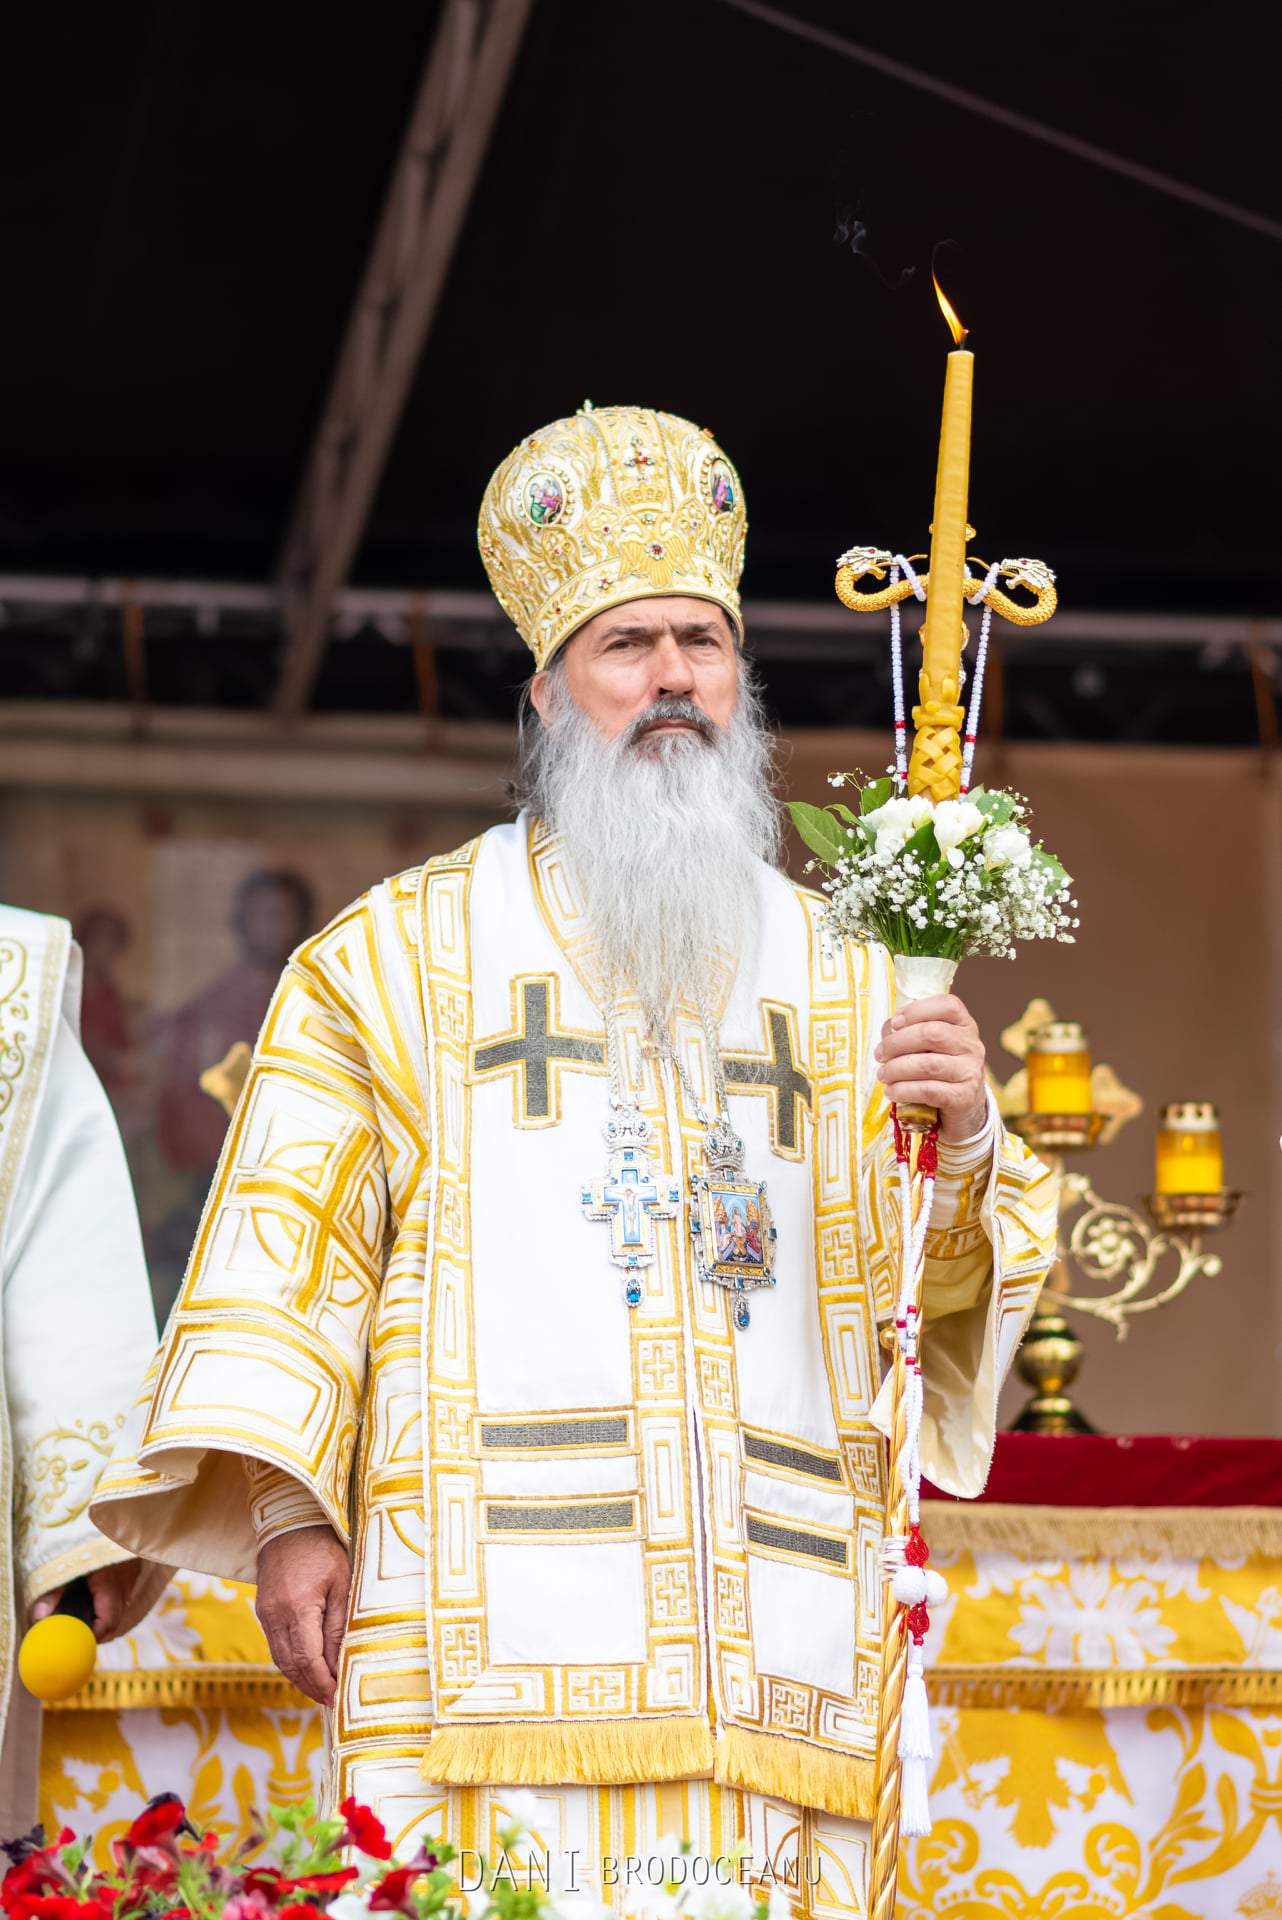 Reacția lui ÎPS Teodosie, după criticile primite de la Patriarhie. ”Nu mă dezic de ce am făcut”